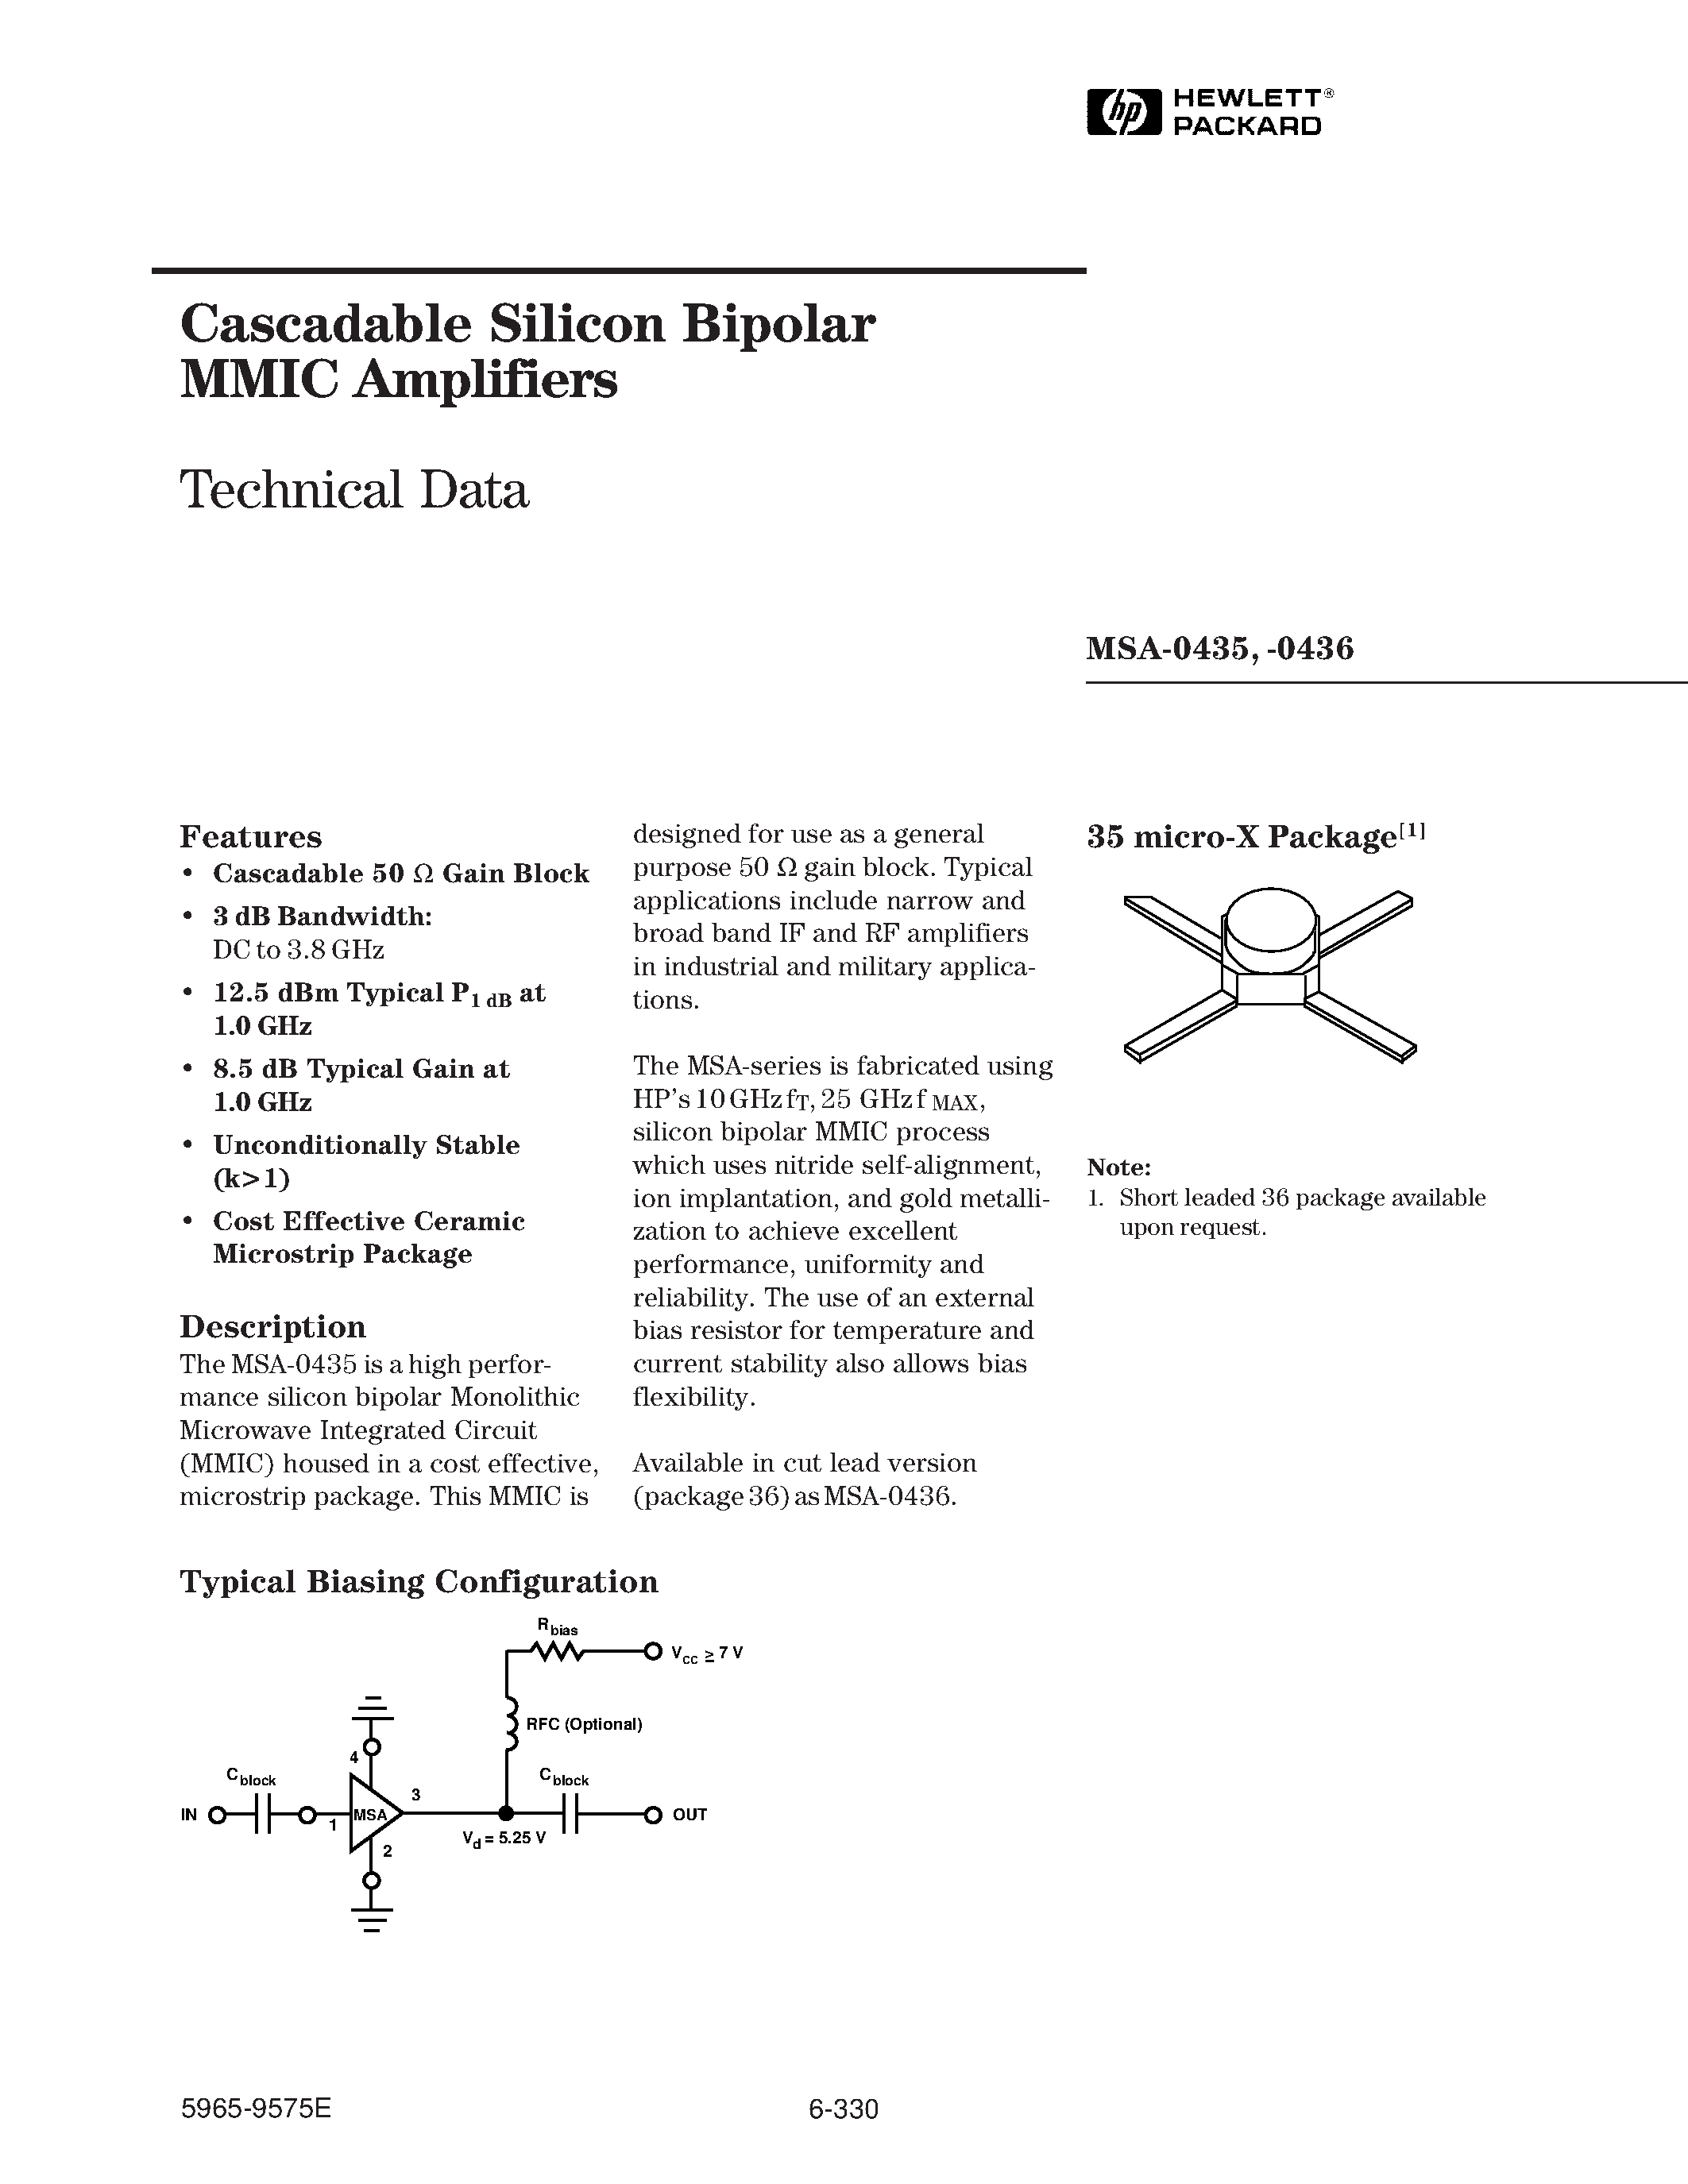 Даташит MSA-0435 - (MSA-0435 / MSA-0436) Cascadable Silicon Bipolar MMIC Amplifier страница 1